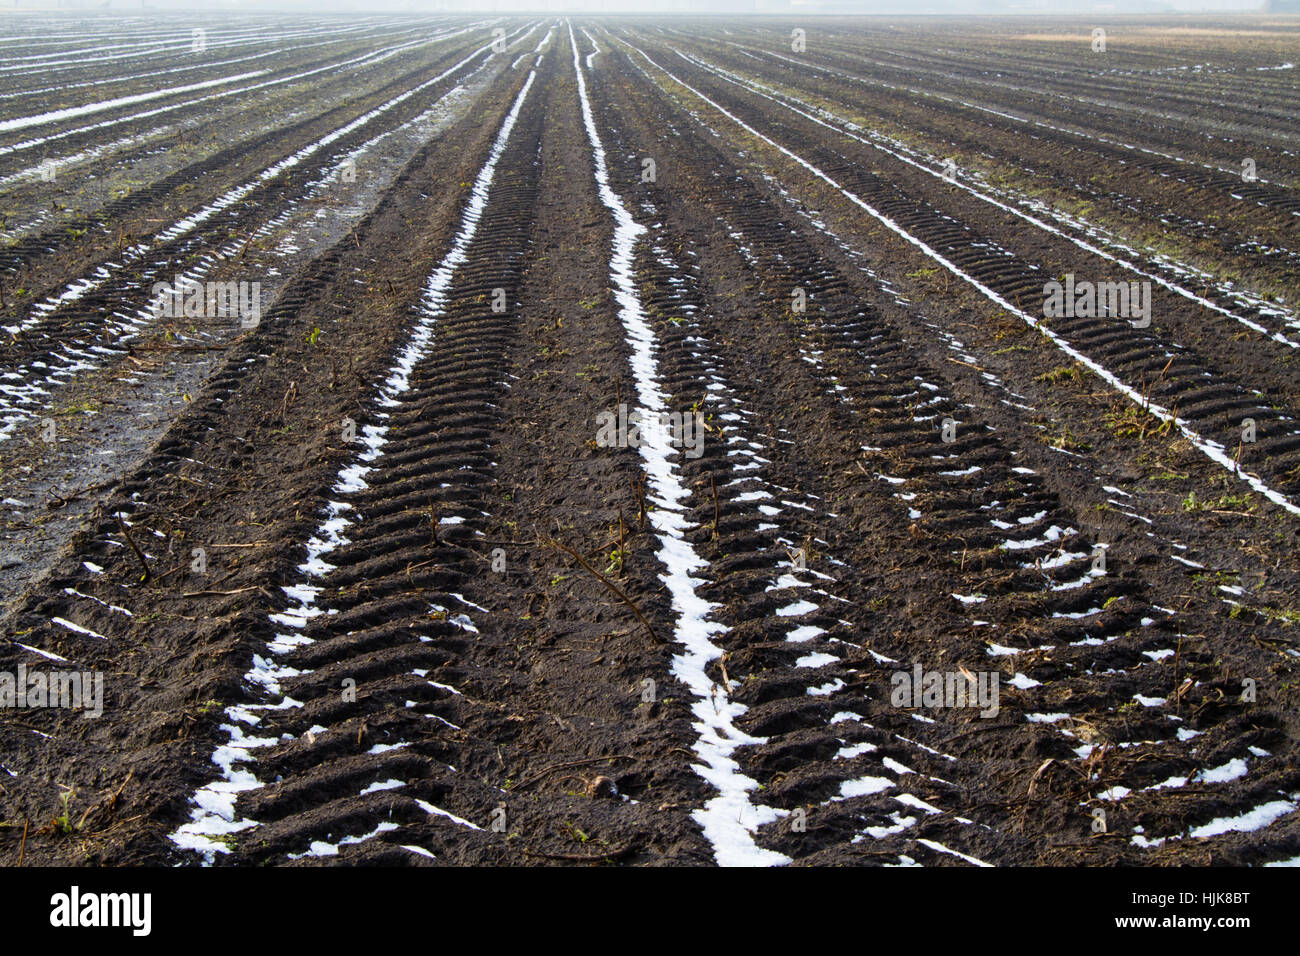 Les traces de pneus menant vers l'horizon sur un champ agricole enneigés et gelés Banque D'Images